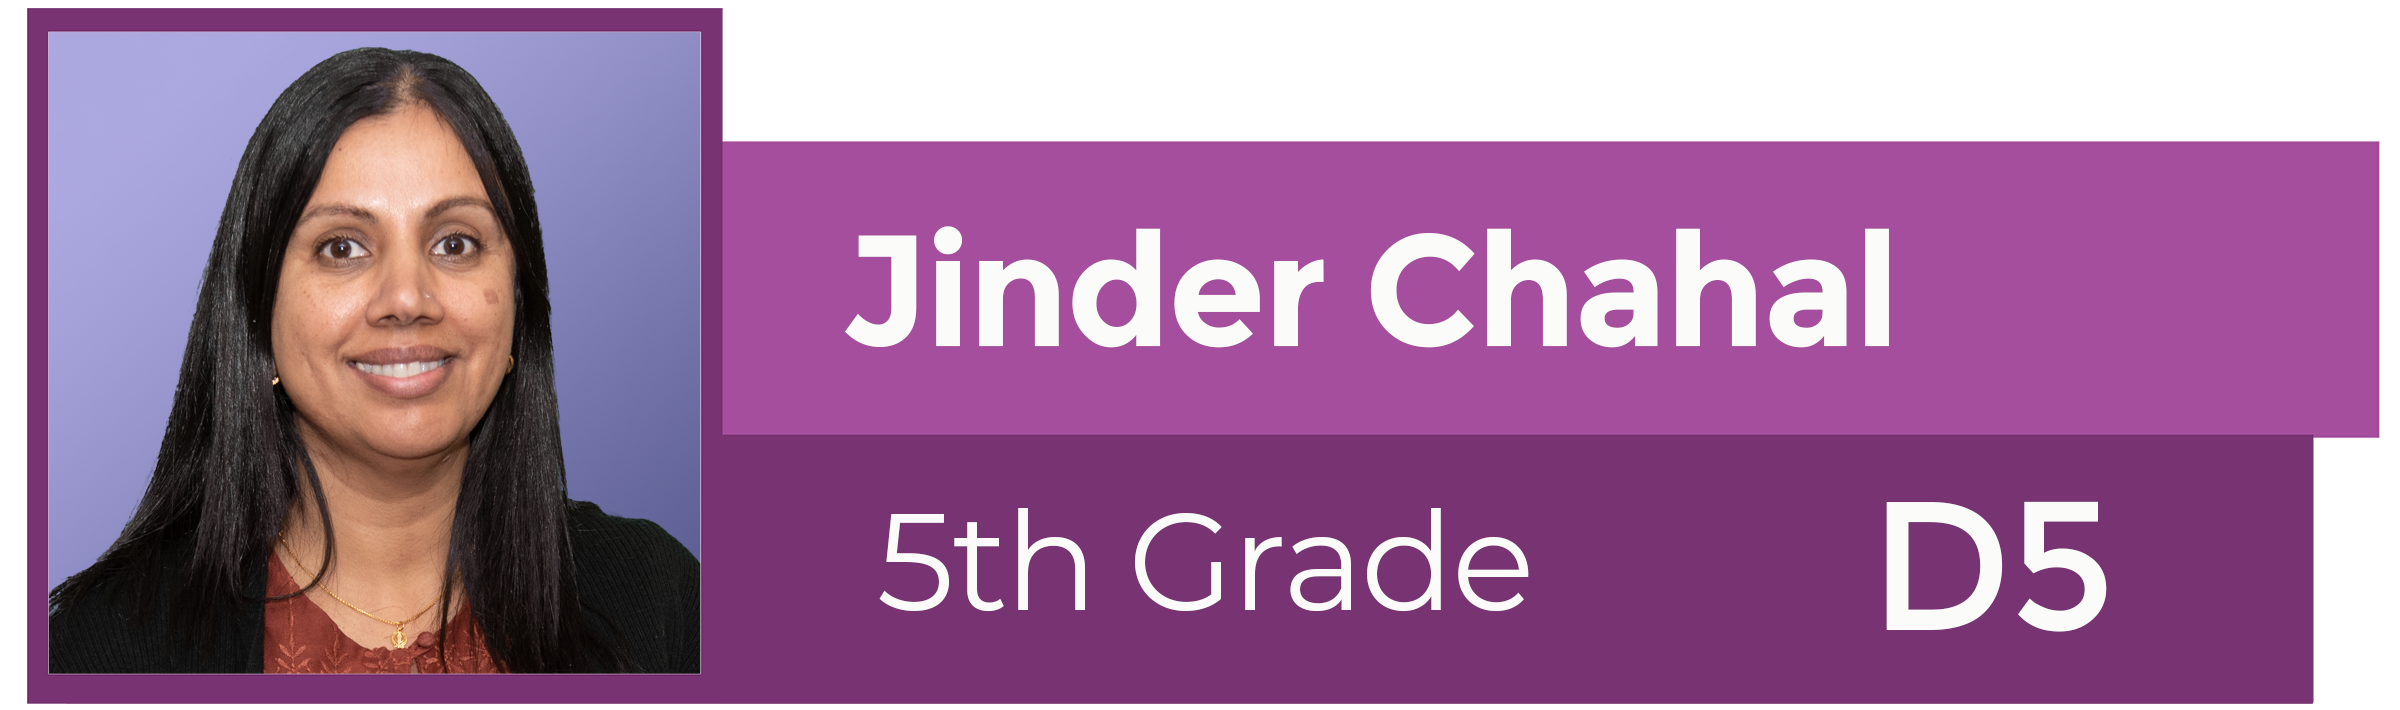 Jinder Chahal 5th Grade